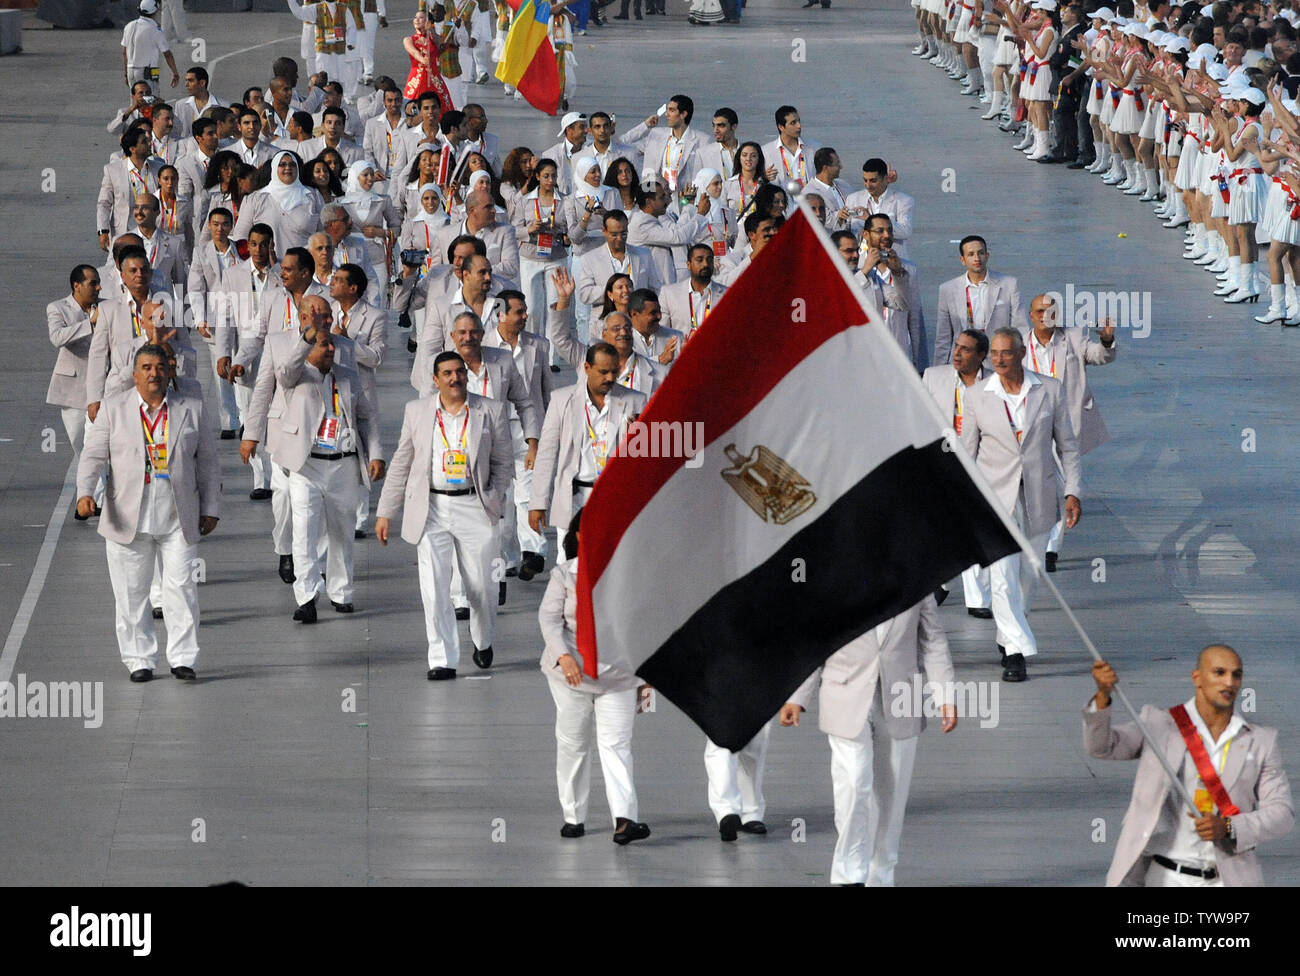 Die Ägyptische olympische Mannschaft marschiert in National Stadium, auch genannt der Bird's Nest, während der Eröffnungszeremonie für die Olympischen Sommerspiele 2008 in Peking, China, am 8. August 2008. (UPI Foto/Pat Benic) Stockfoto